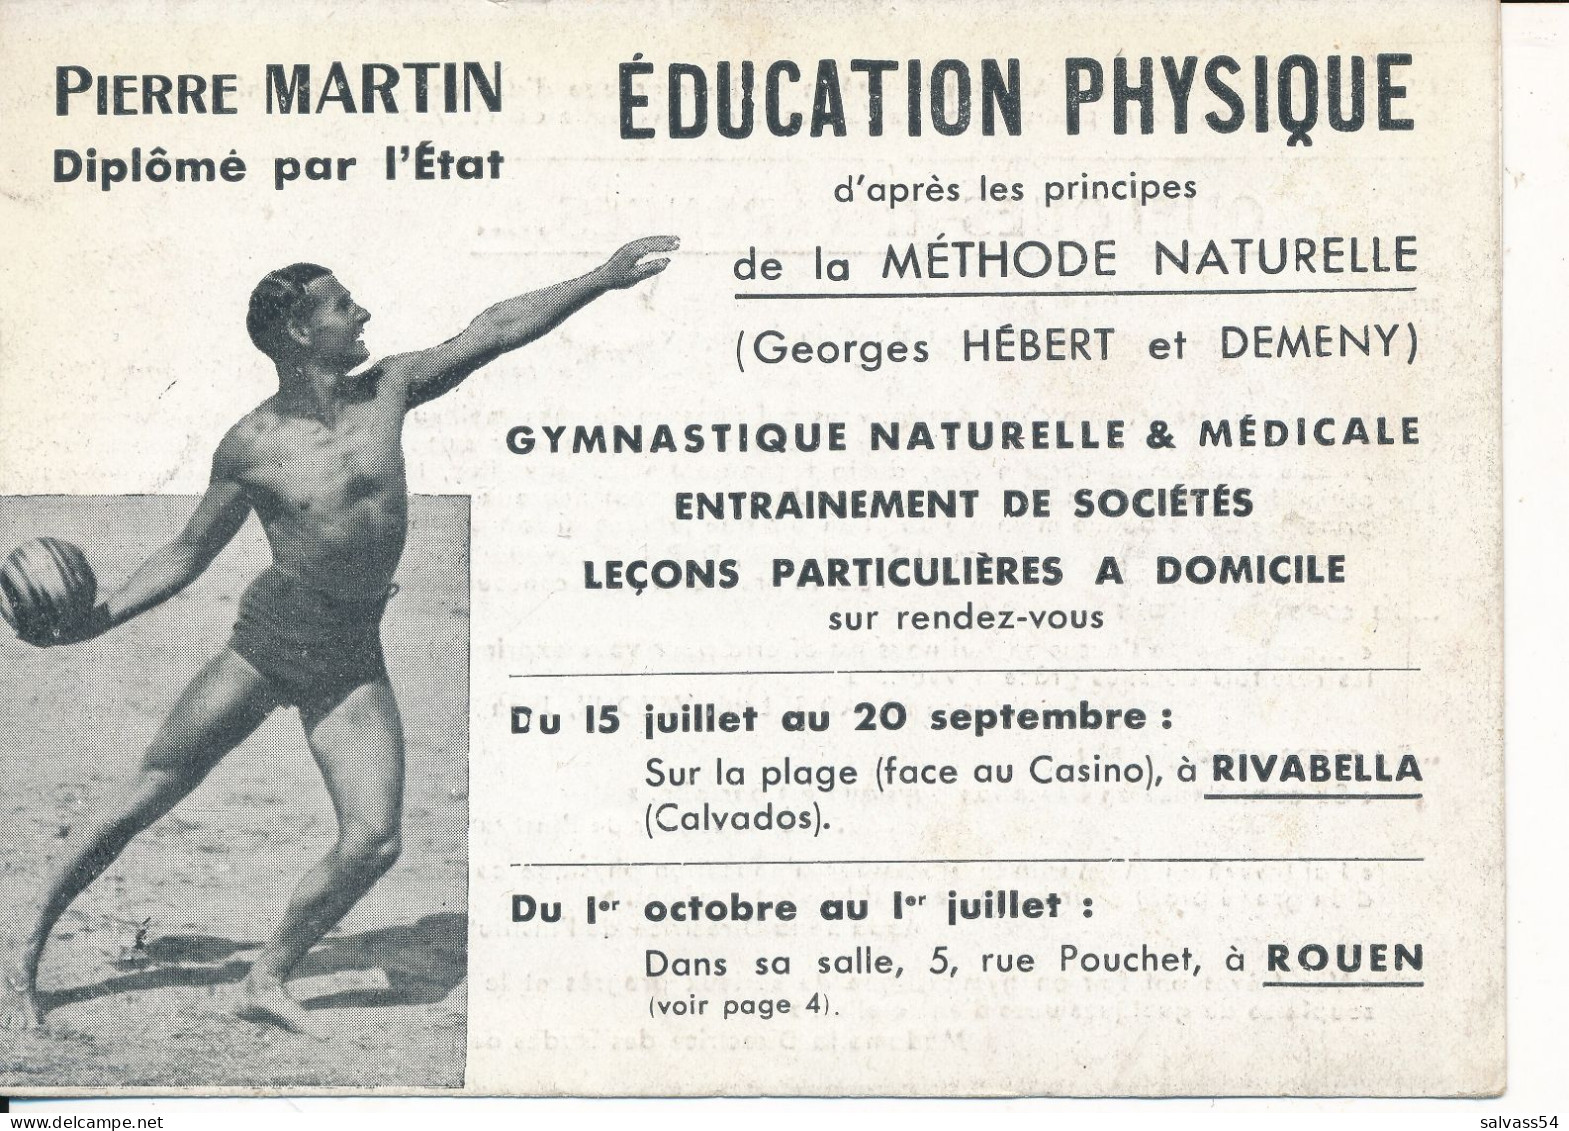 DEPLIANT PUBLICITAIRE 4 VOLETS - SPORT EDUCATION PHYSIQUE - Pierre Martin - ROUEN - Pubblicitari